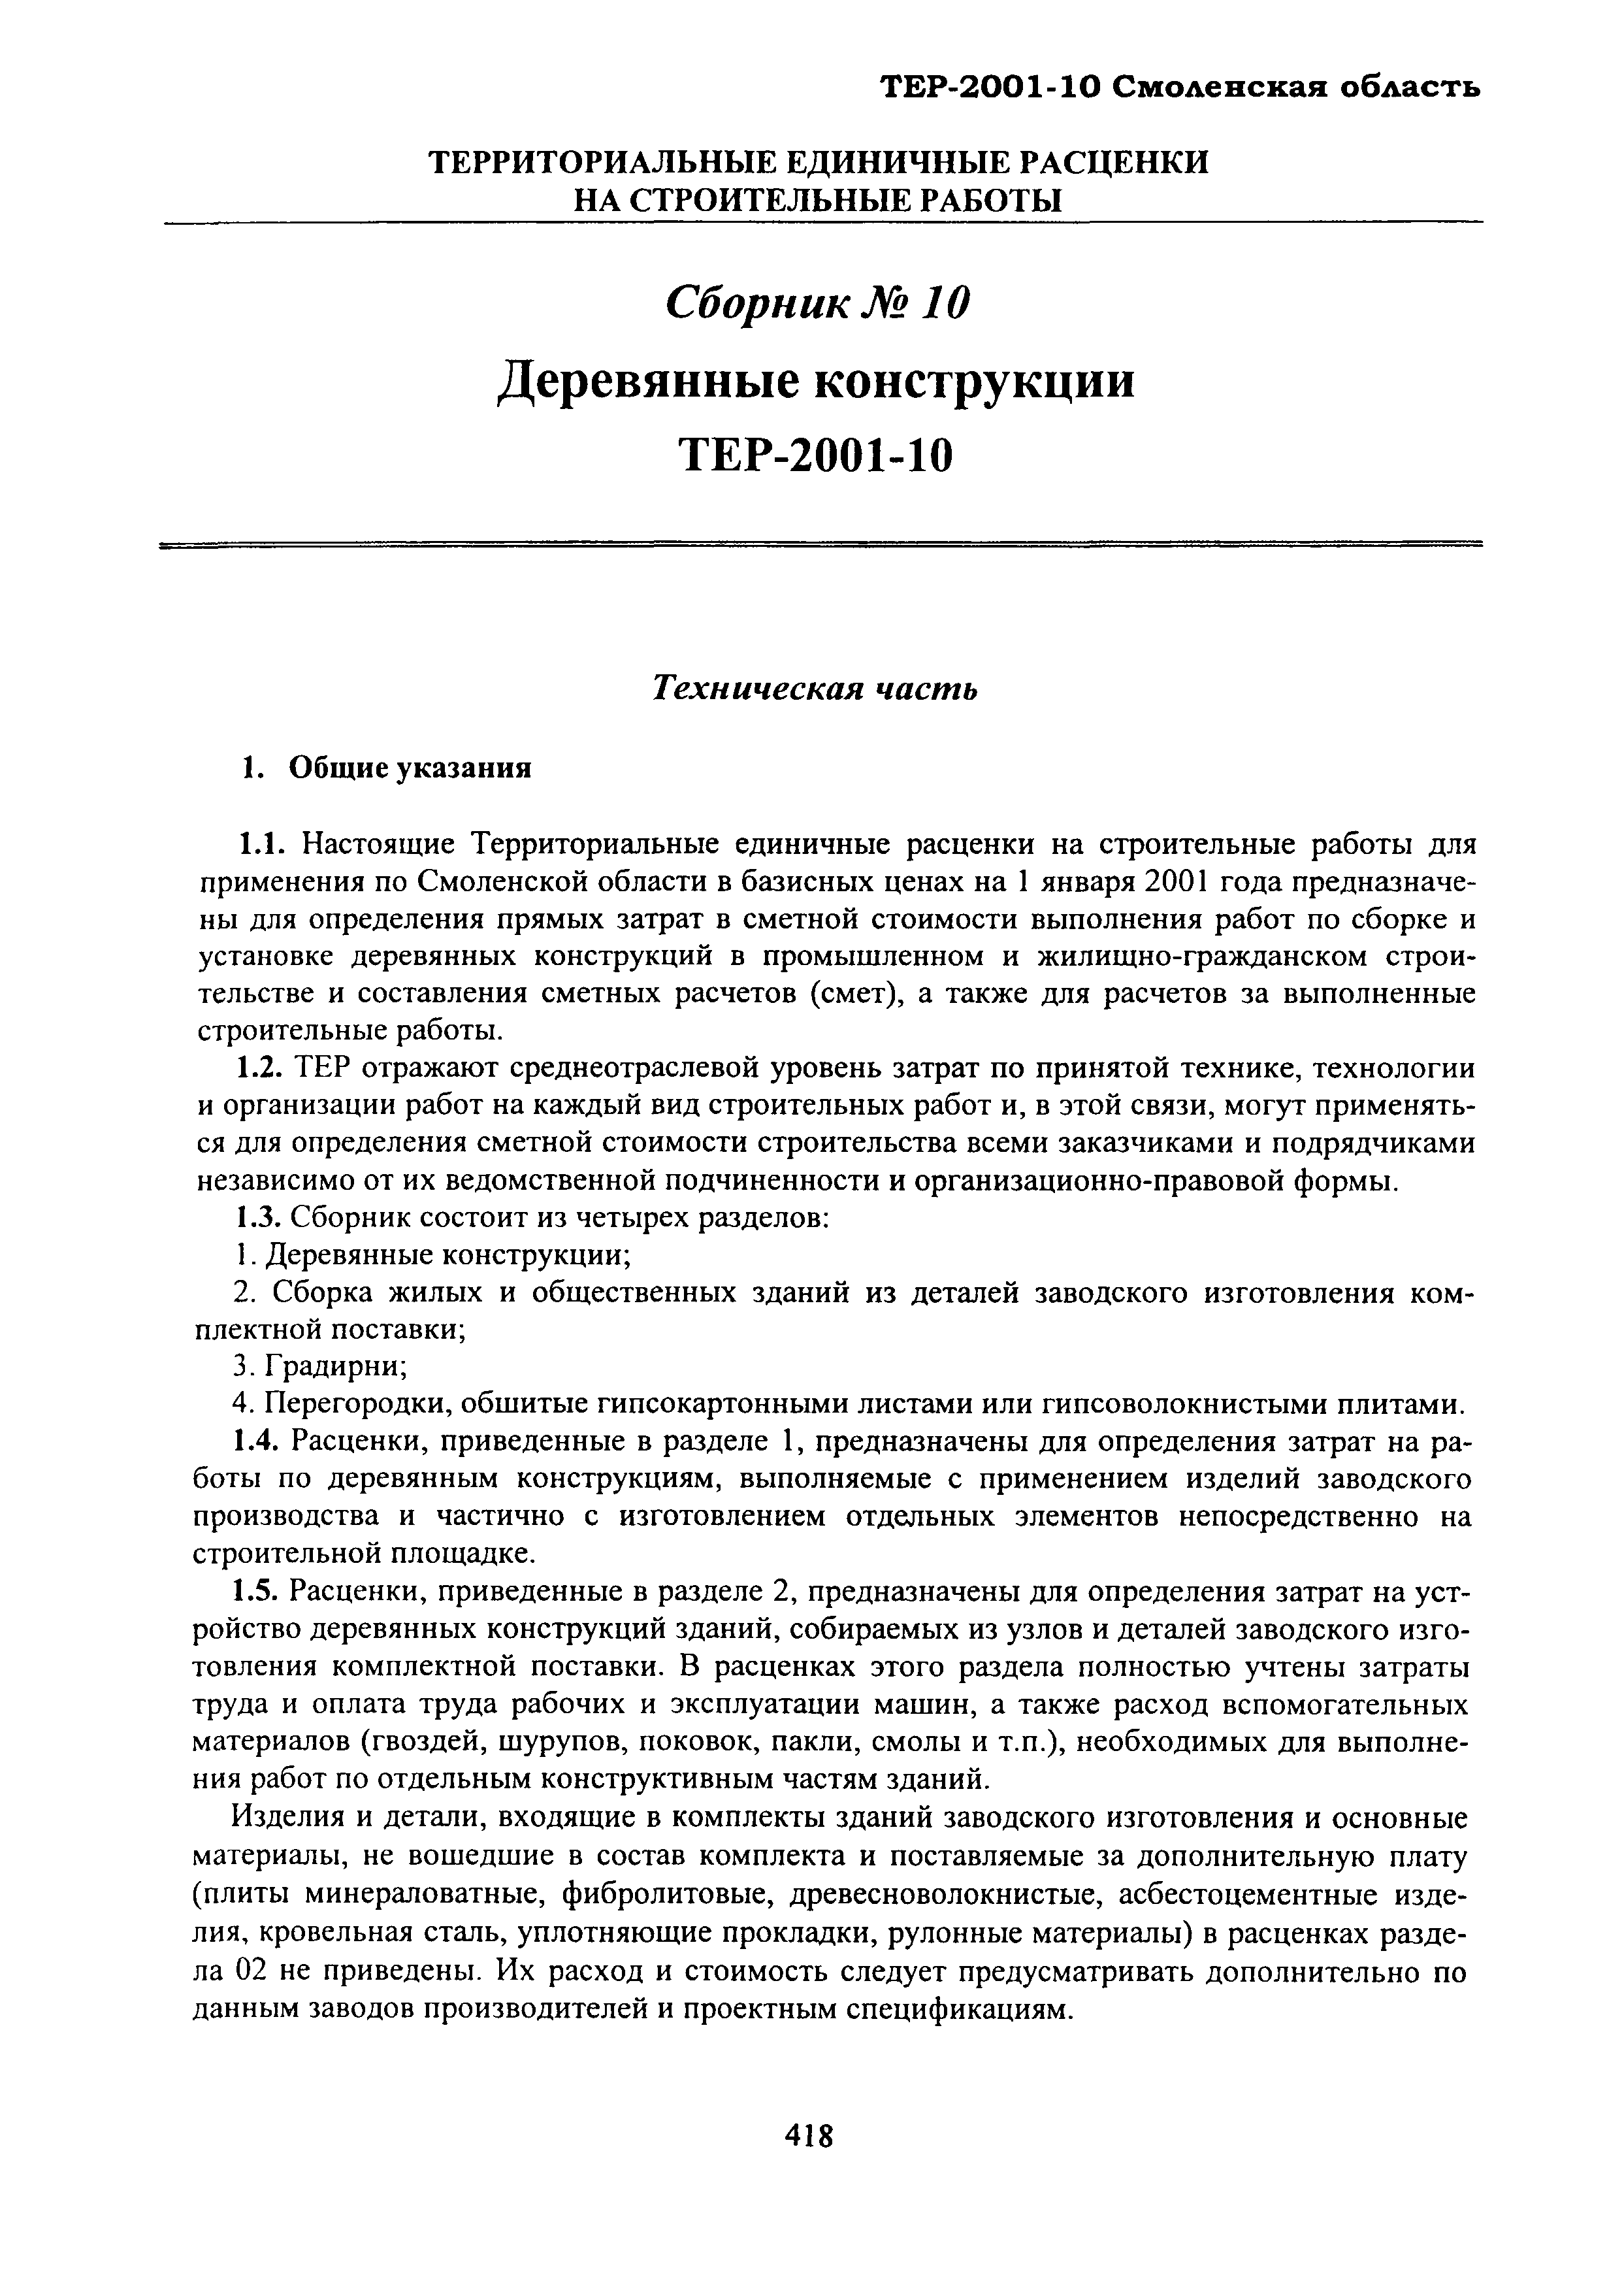 ТЕР Смоленской обл. 2001-10